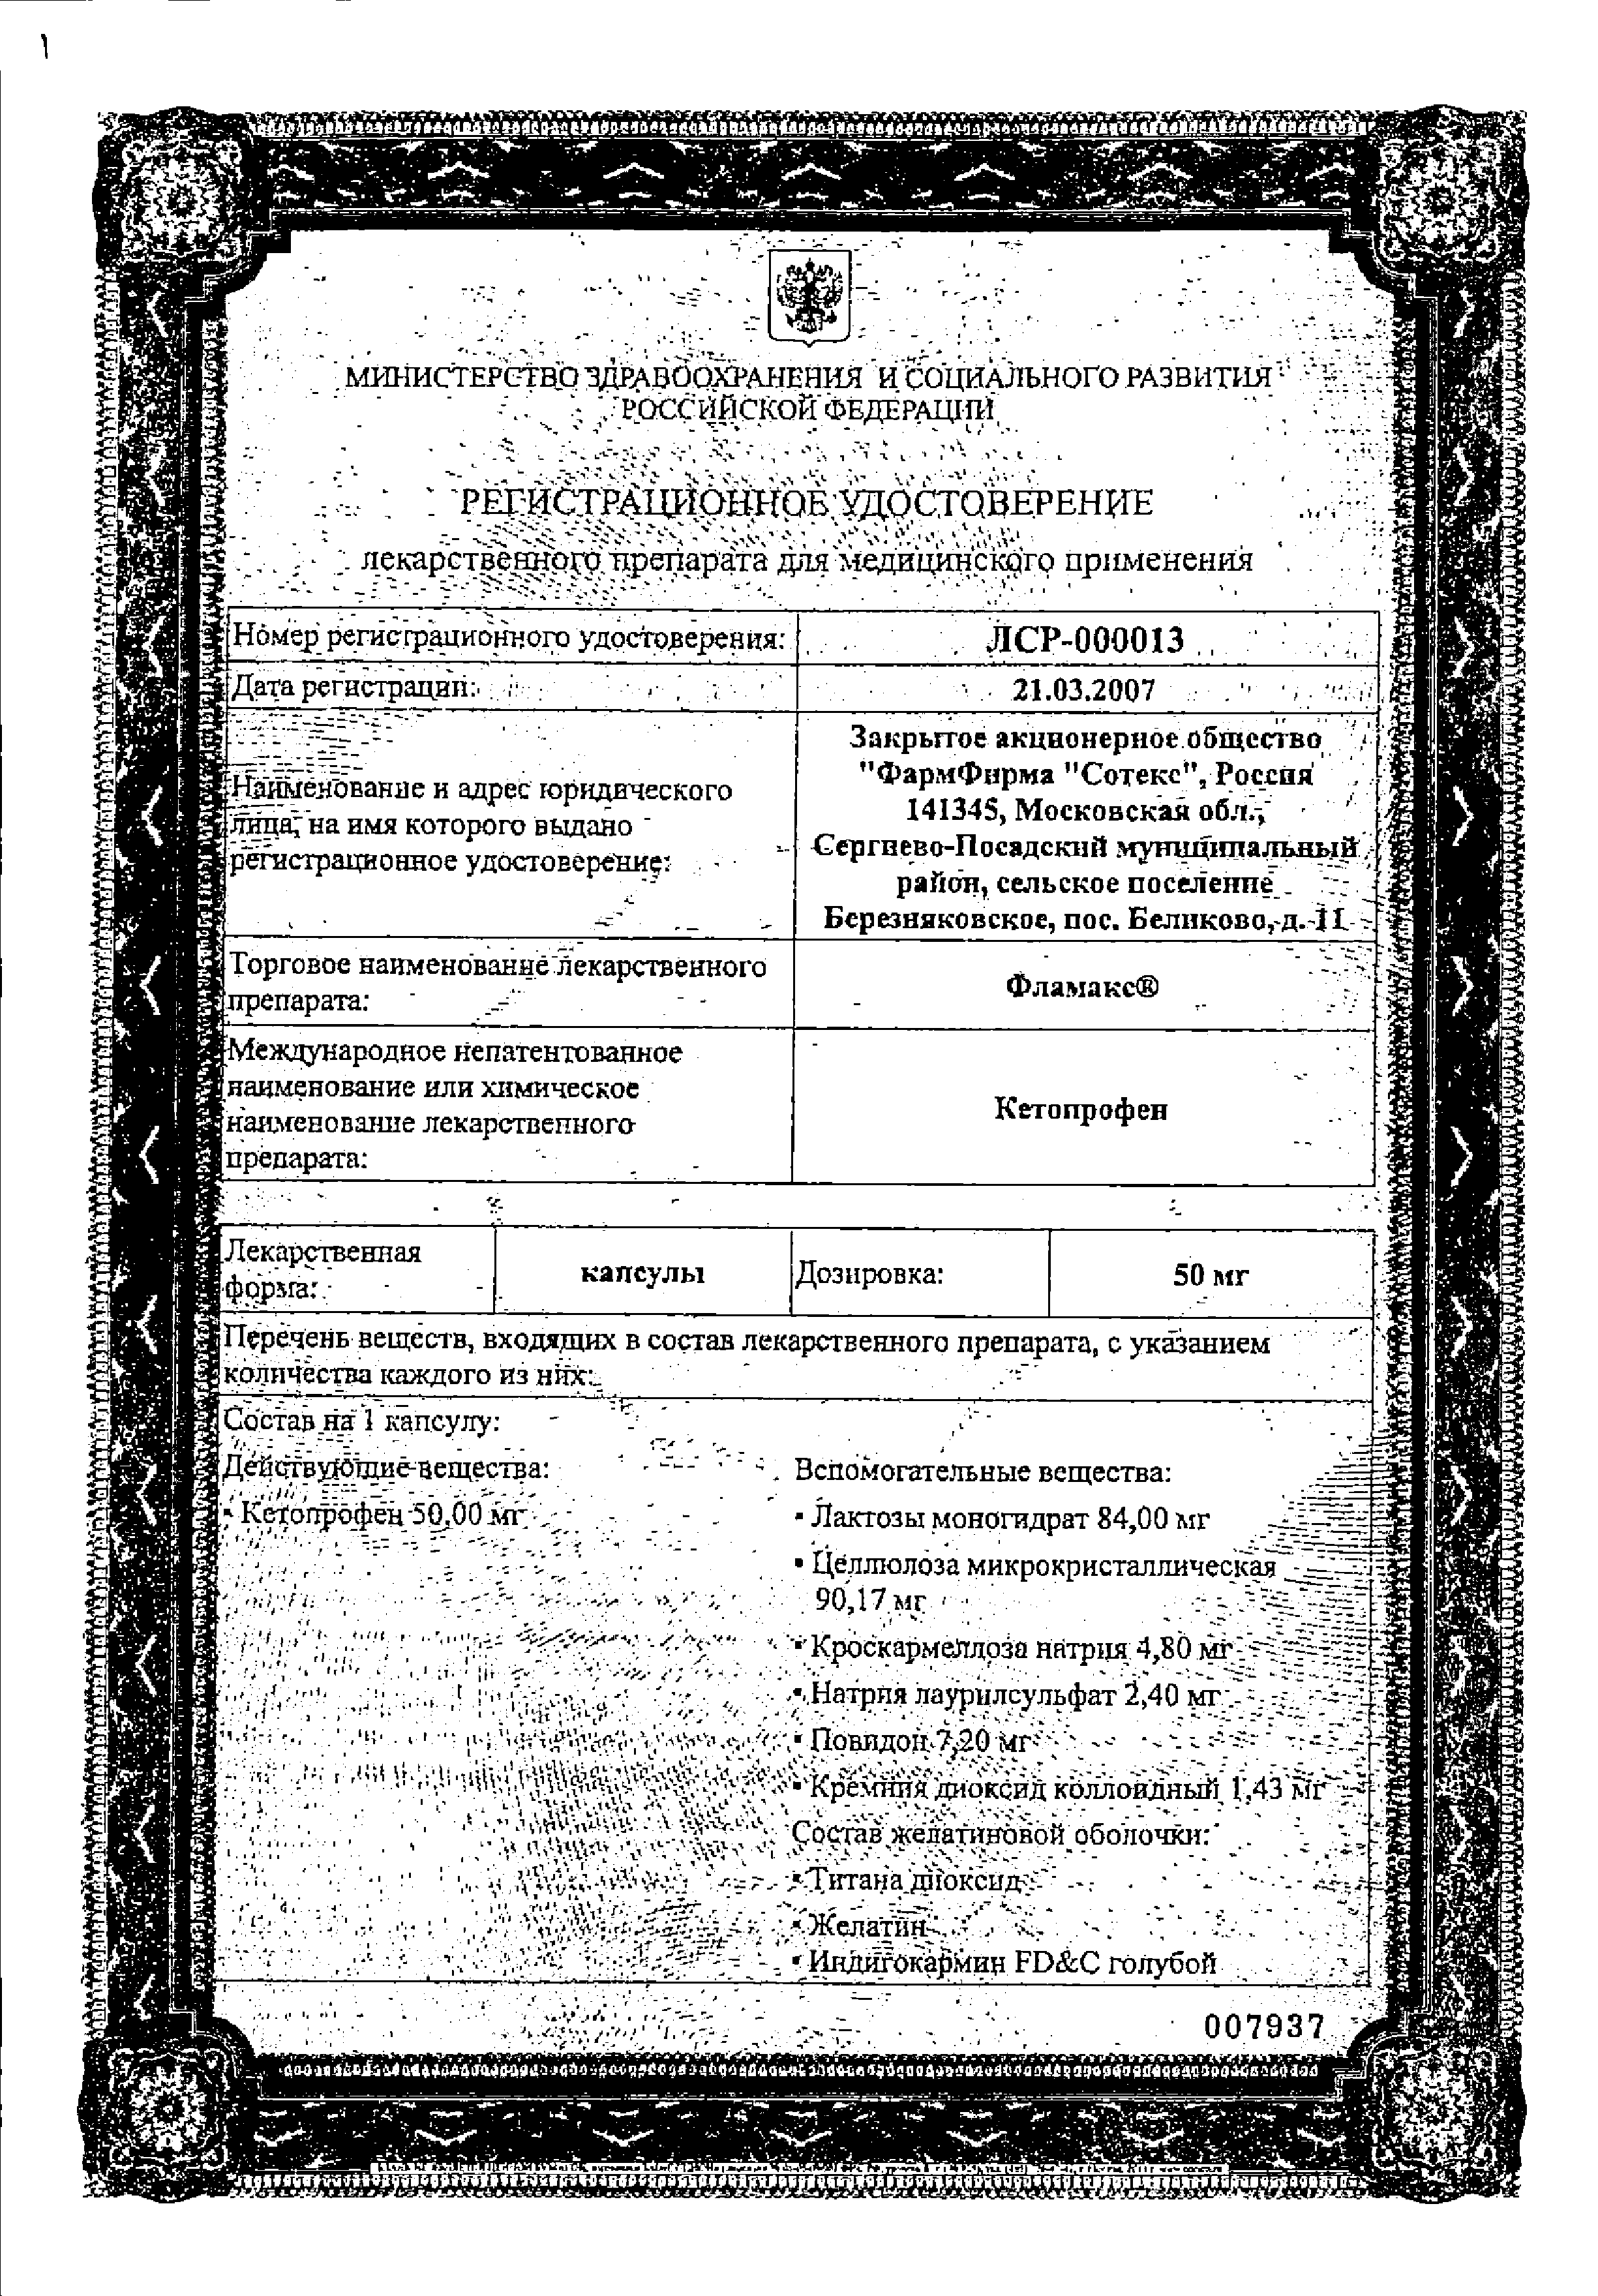 Фламакс сертификат